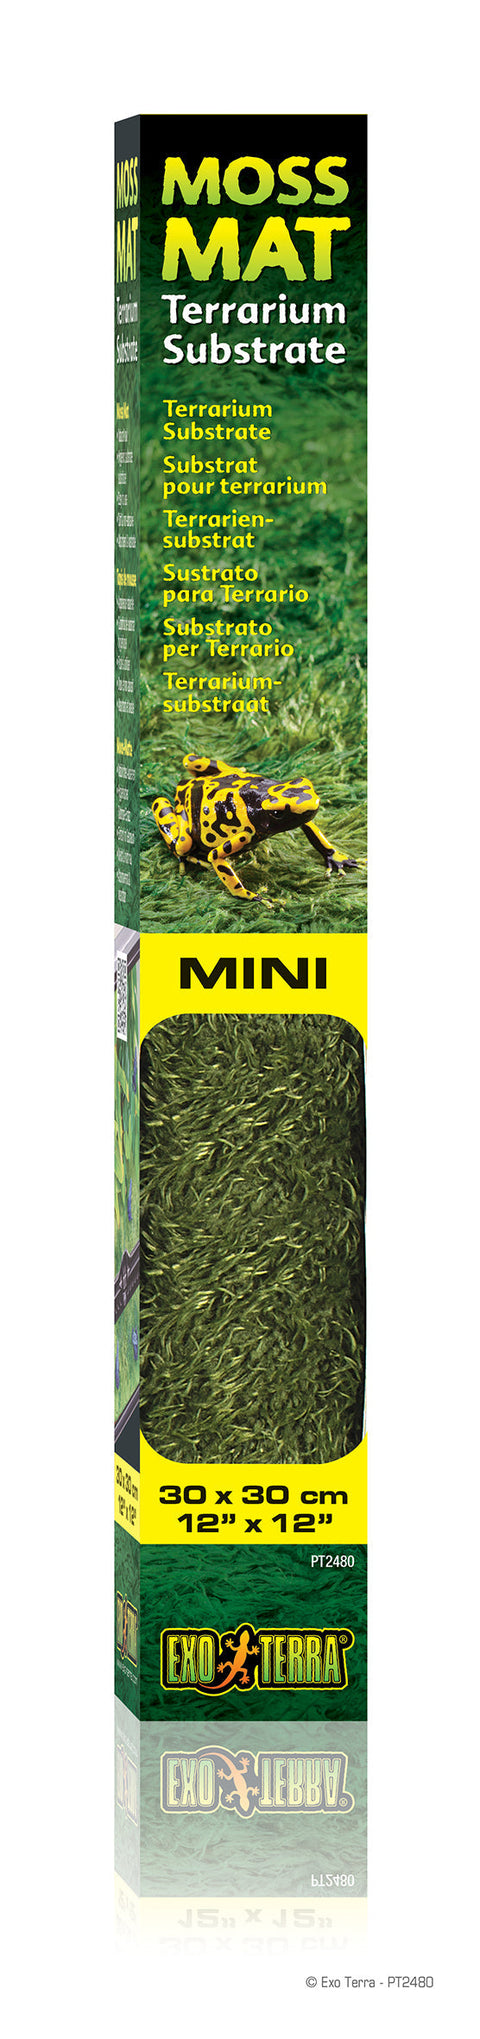 Exo Terra Moss Mat MINI 12x12